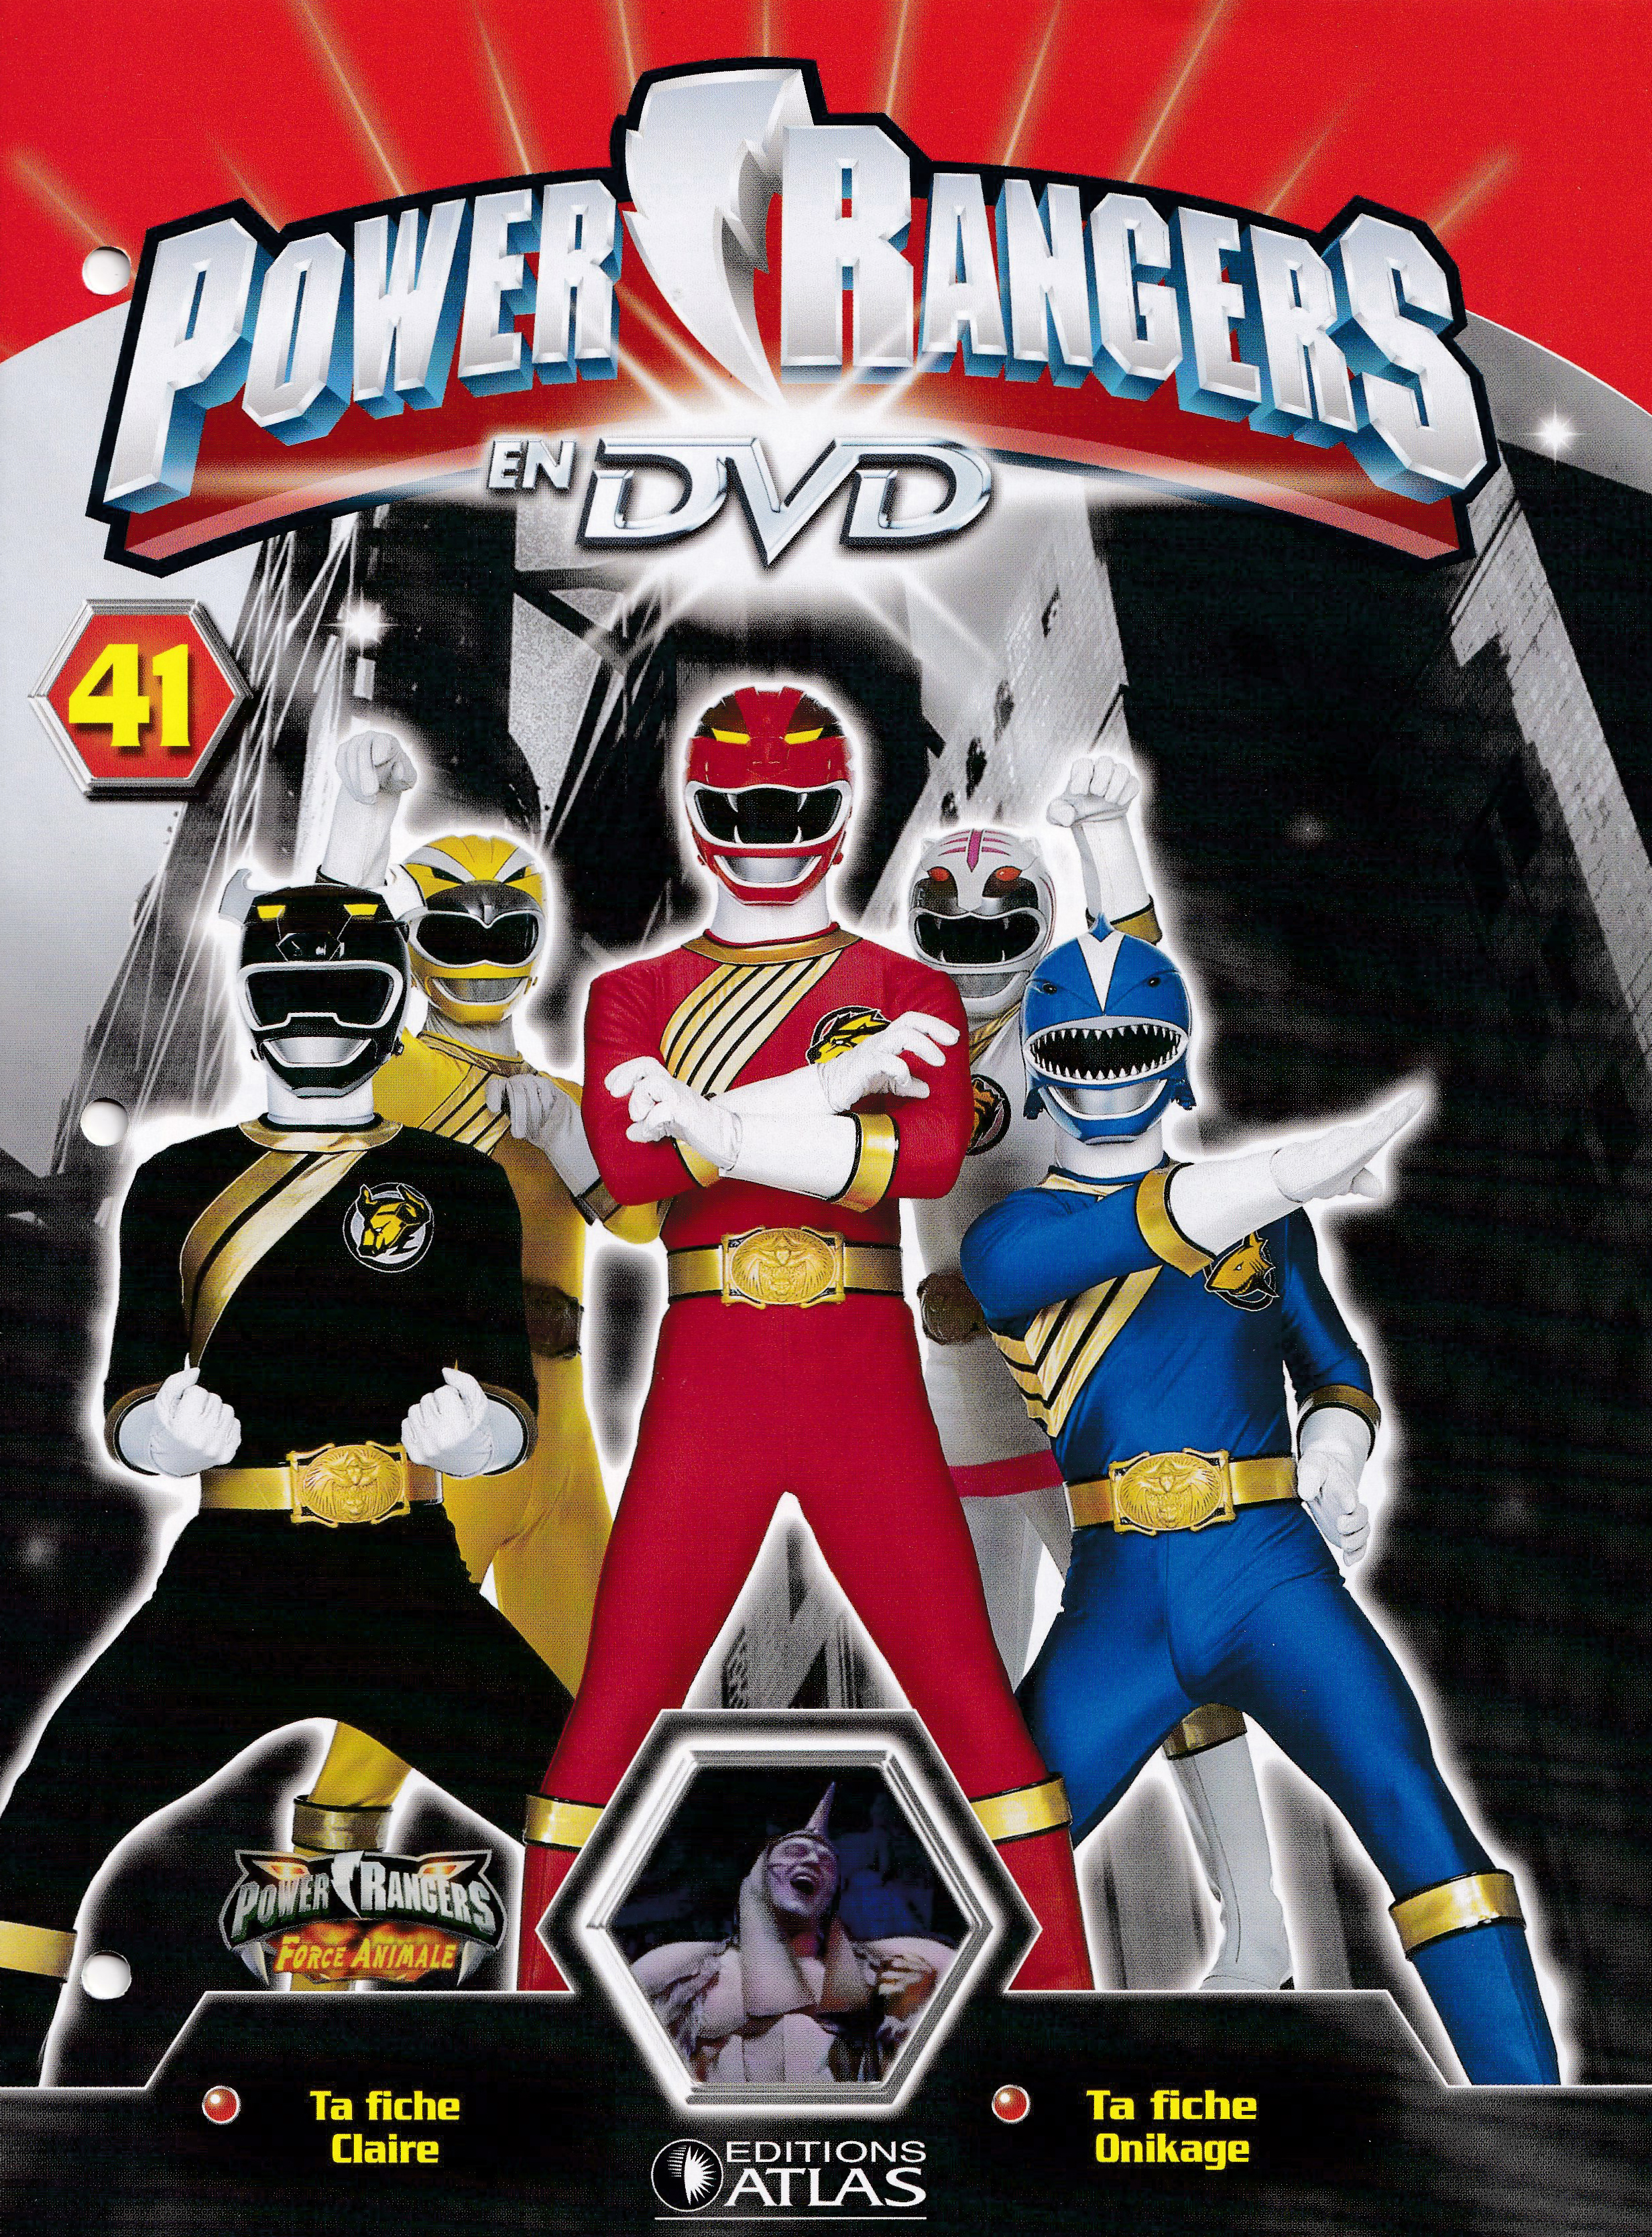 Power Rangers en DVD n°41